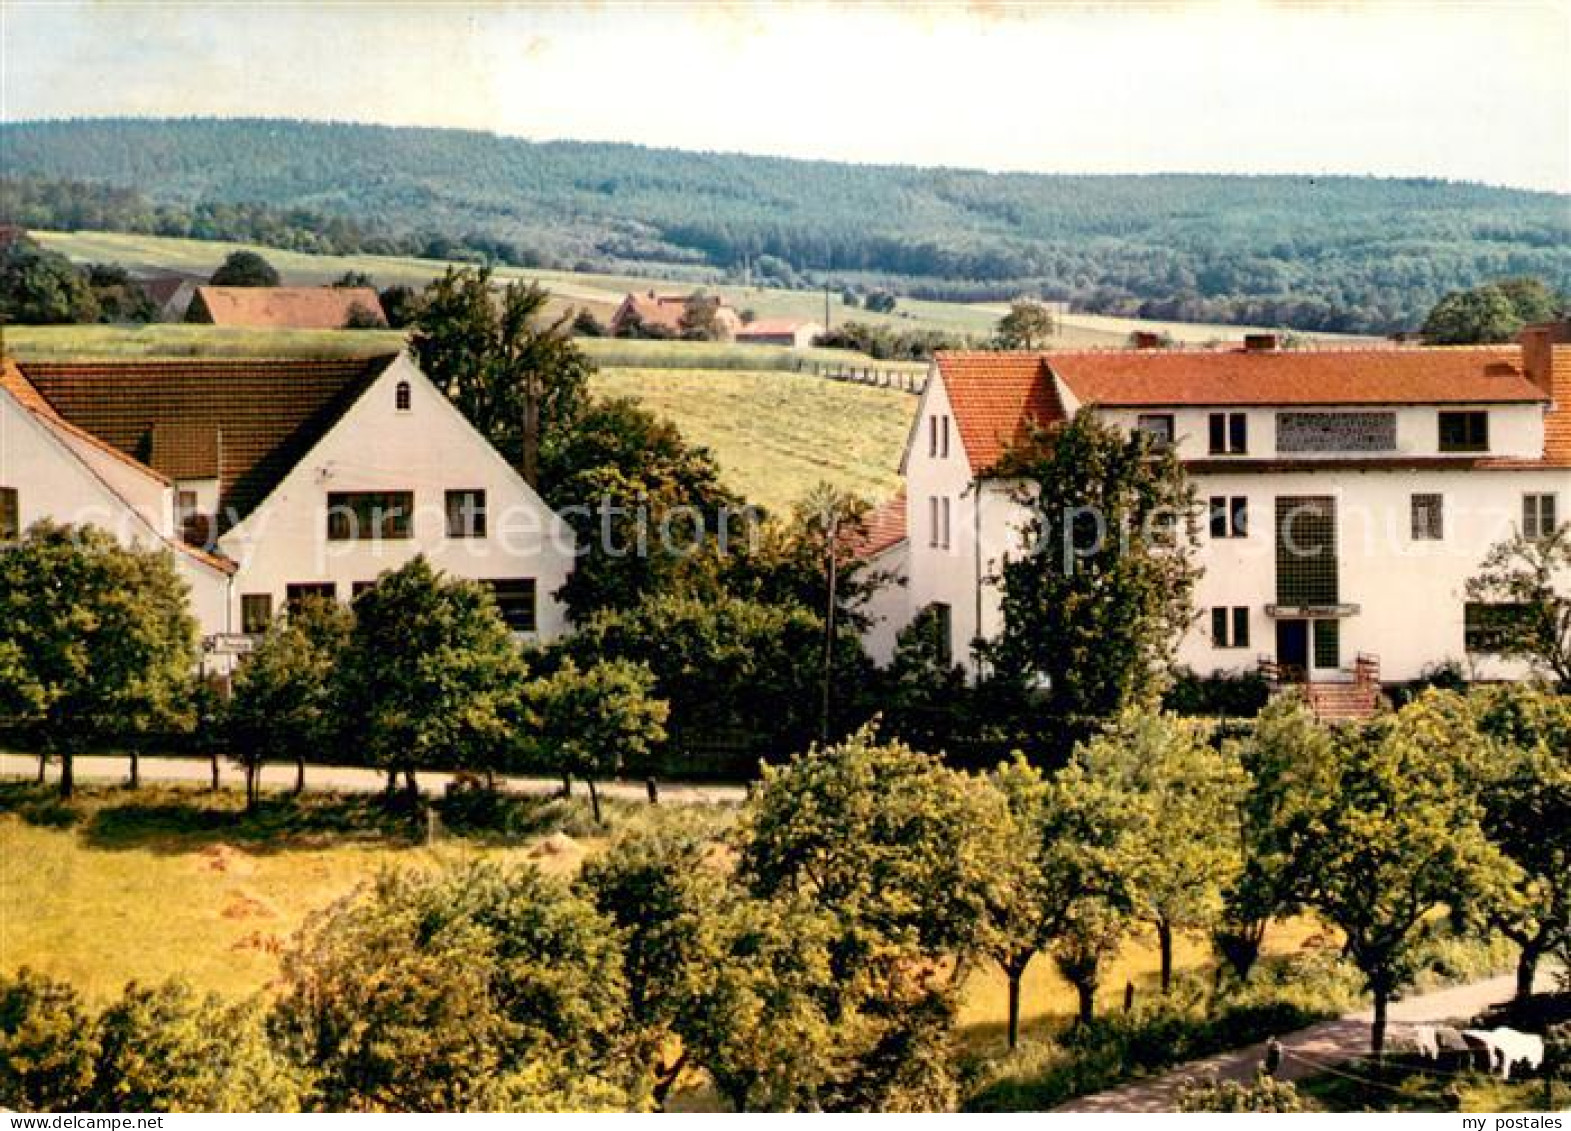 73686123 Bad Holzhausen Luebbecke Pension Storck Und Haus Anneli Bad Holzhausen  - Getmold